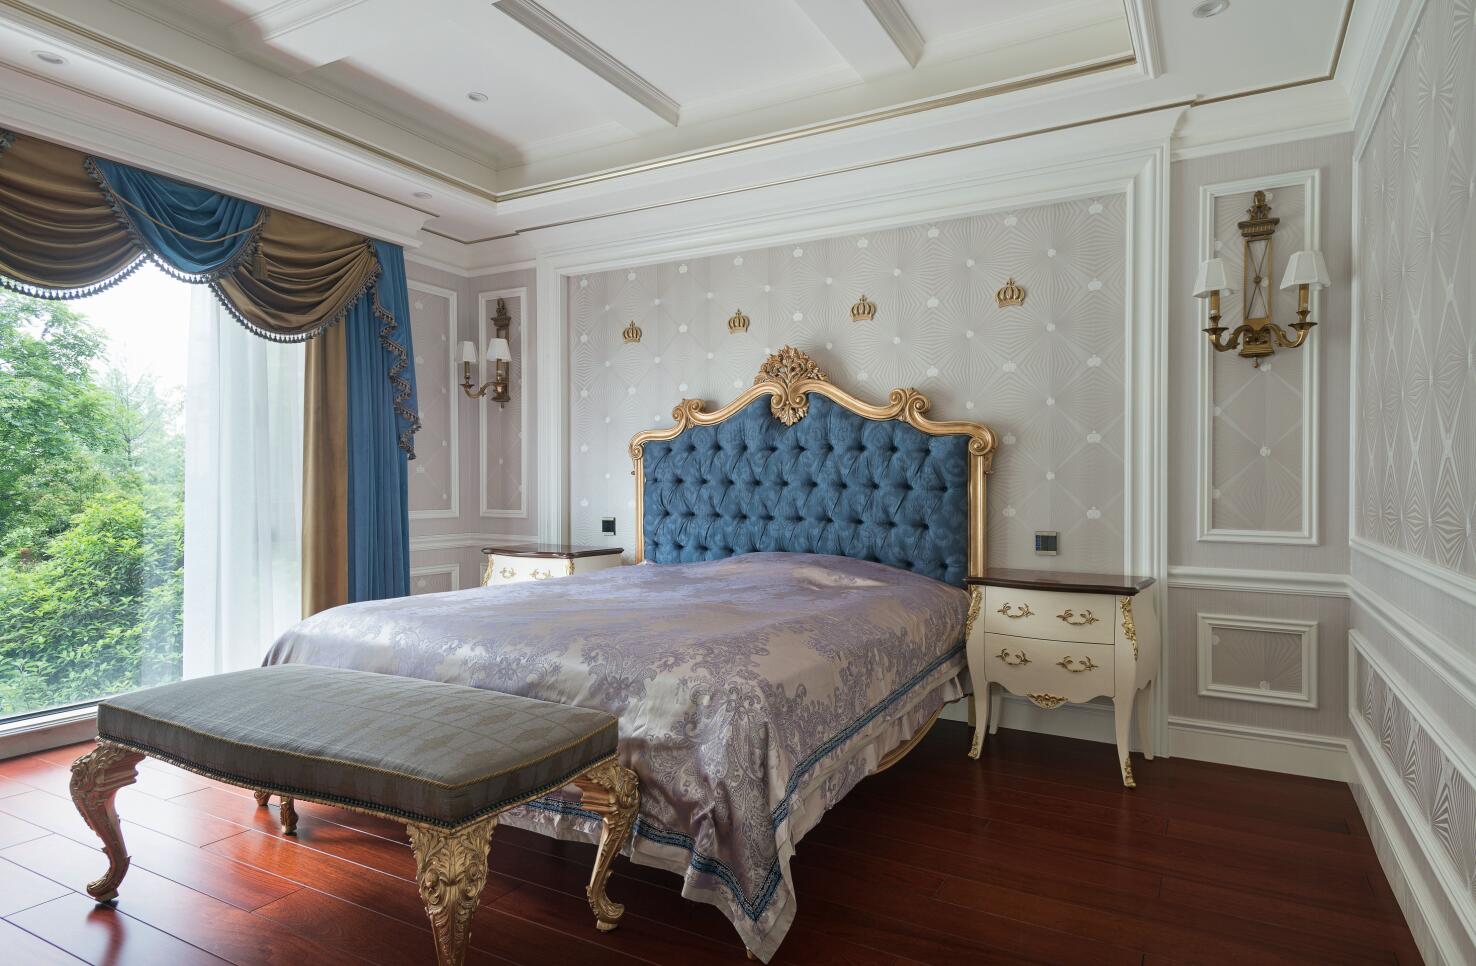 别墅 古典 腾龙设计 卧室图片来自腾龙设计在提香别墅装修欧式风格尽显典雅风的分享